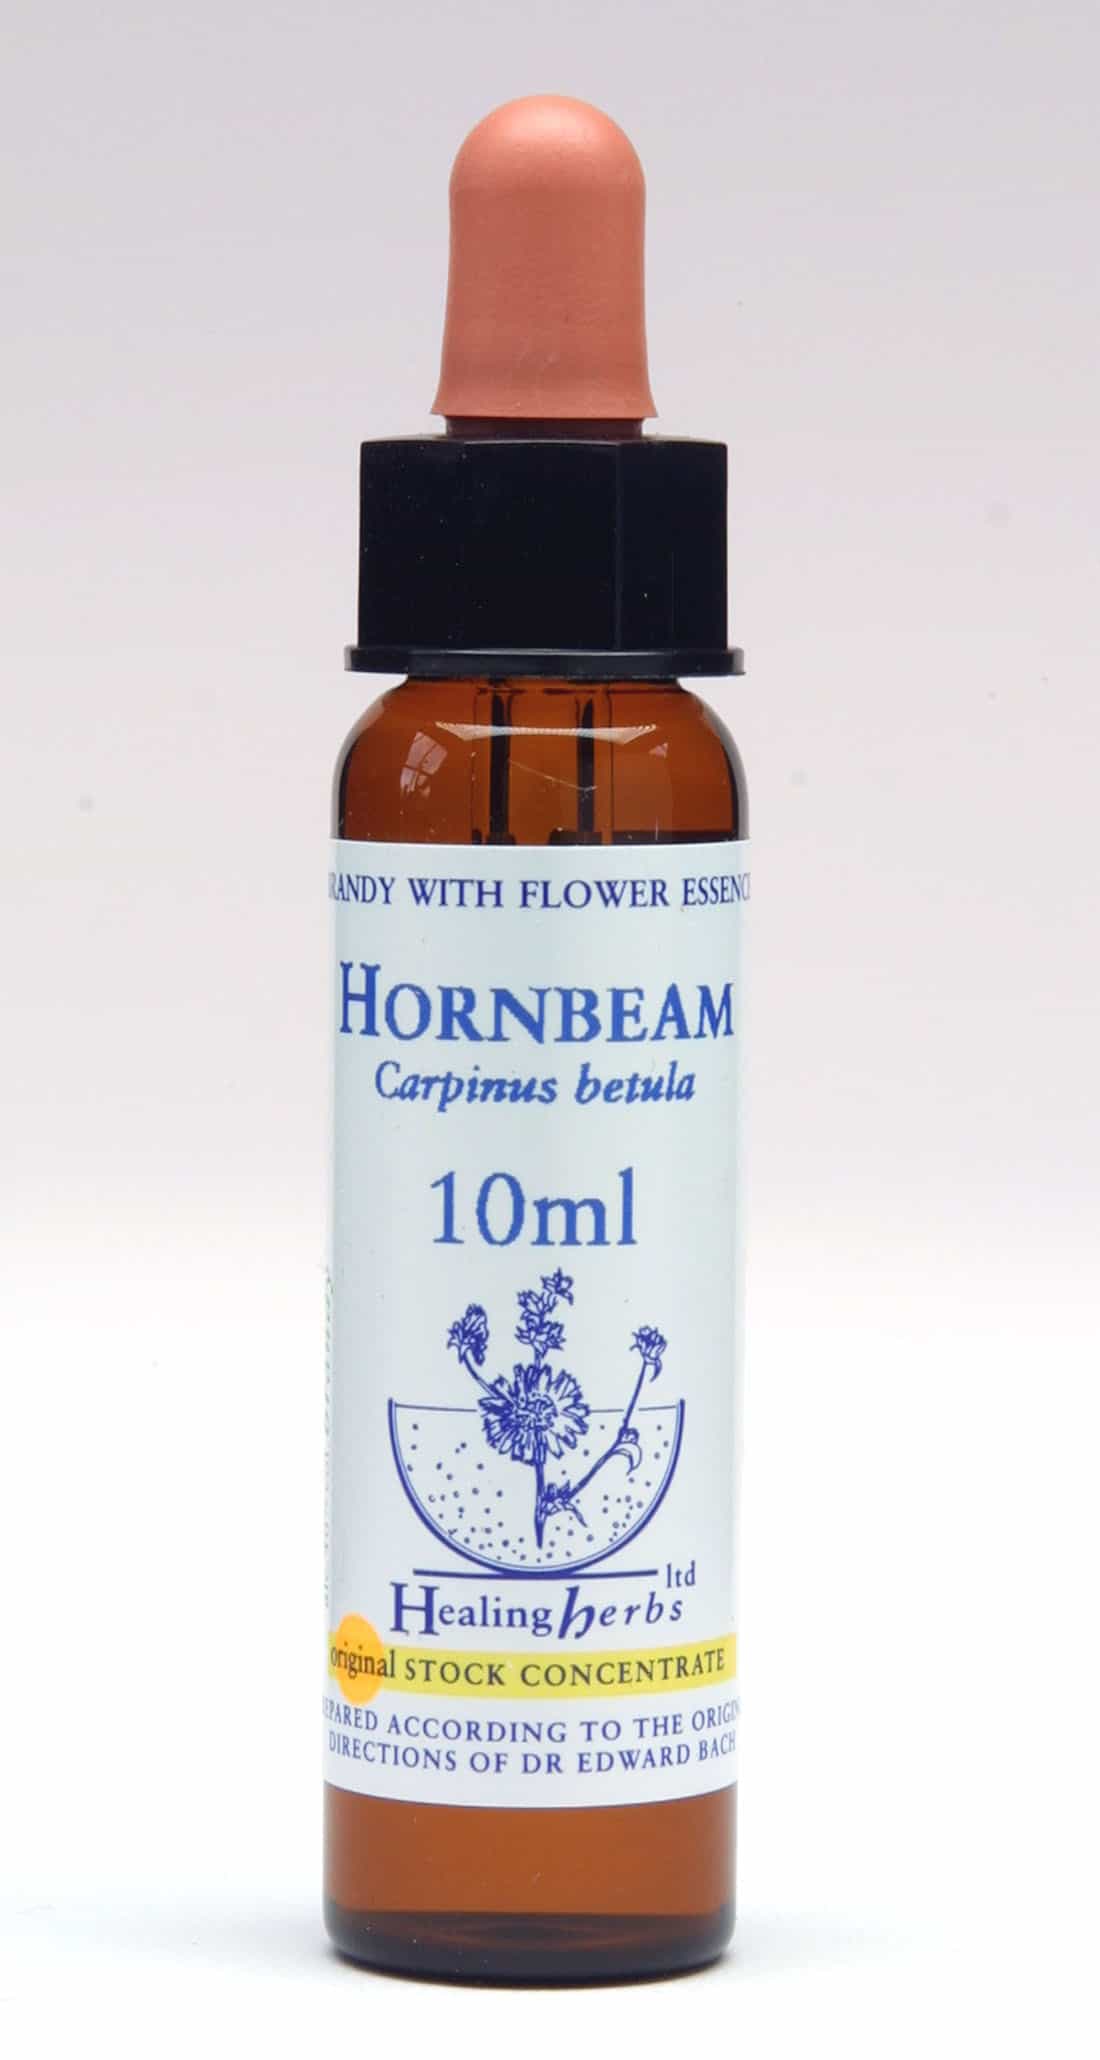 Hornbeam Flor de Bach Healing Herbs